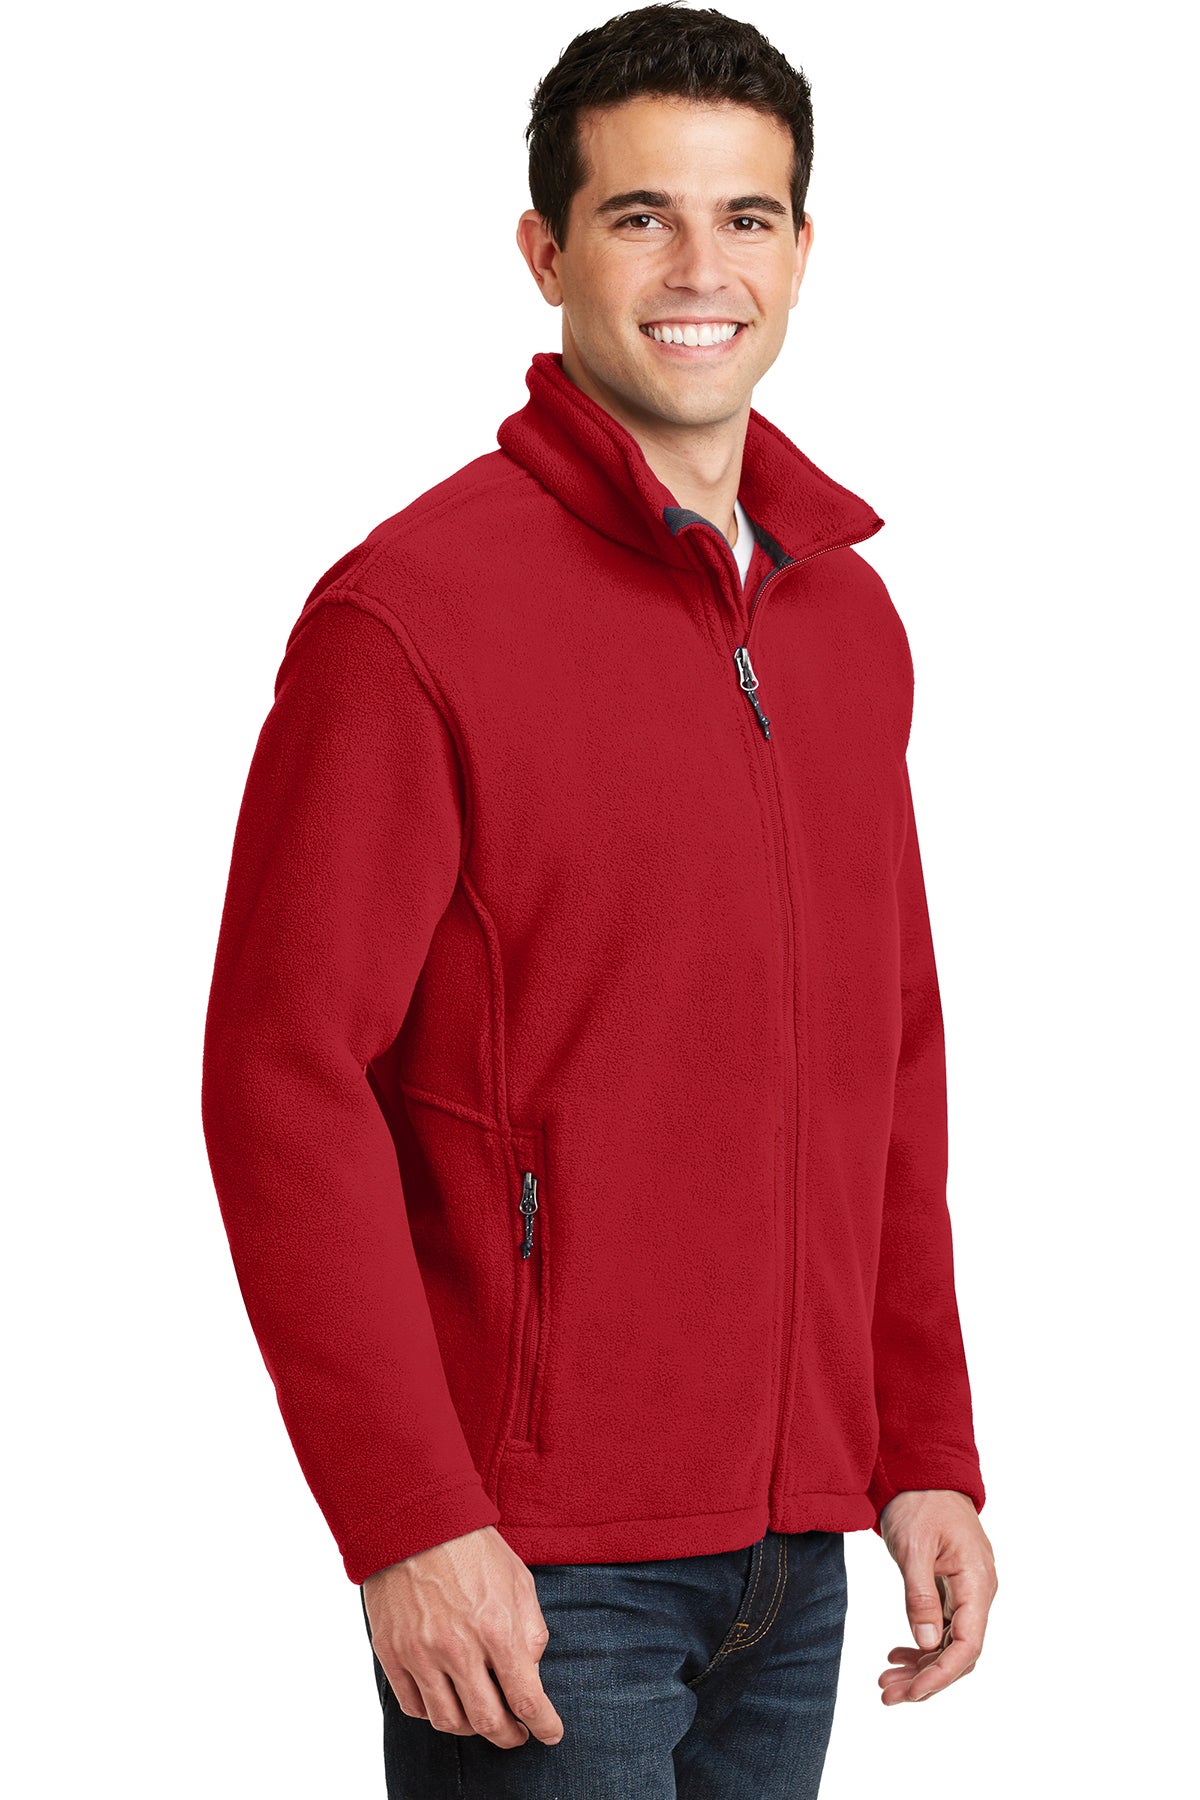 PA F217 Men's Fleece Jacket True Red